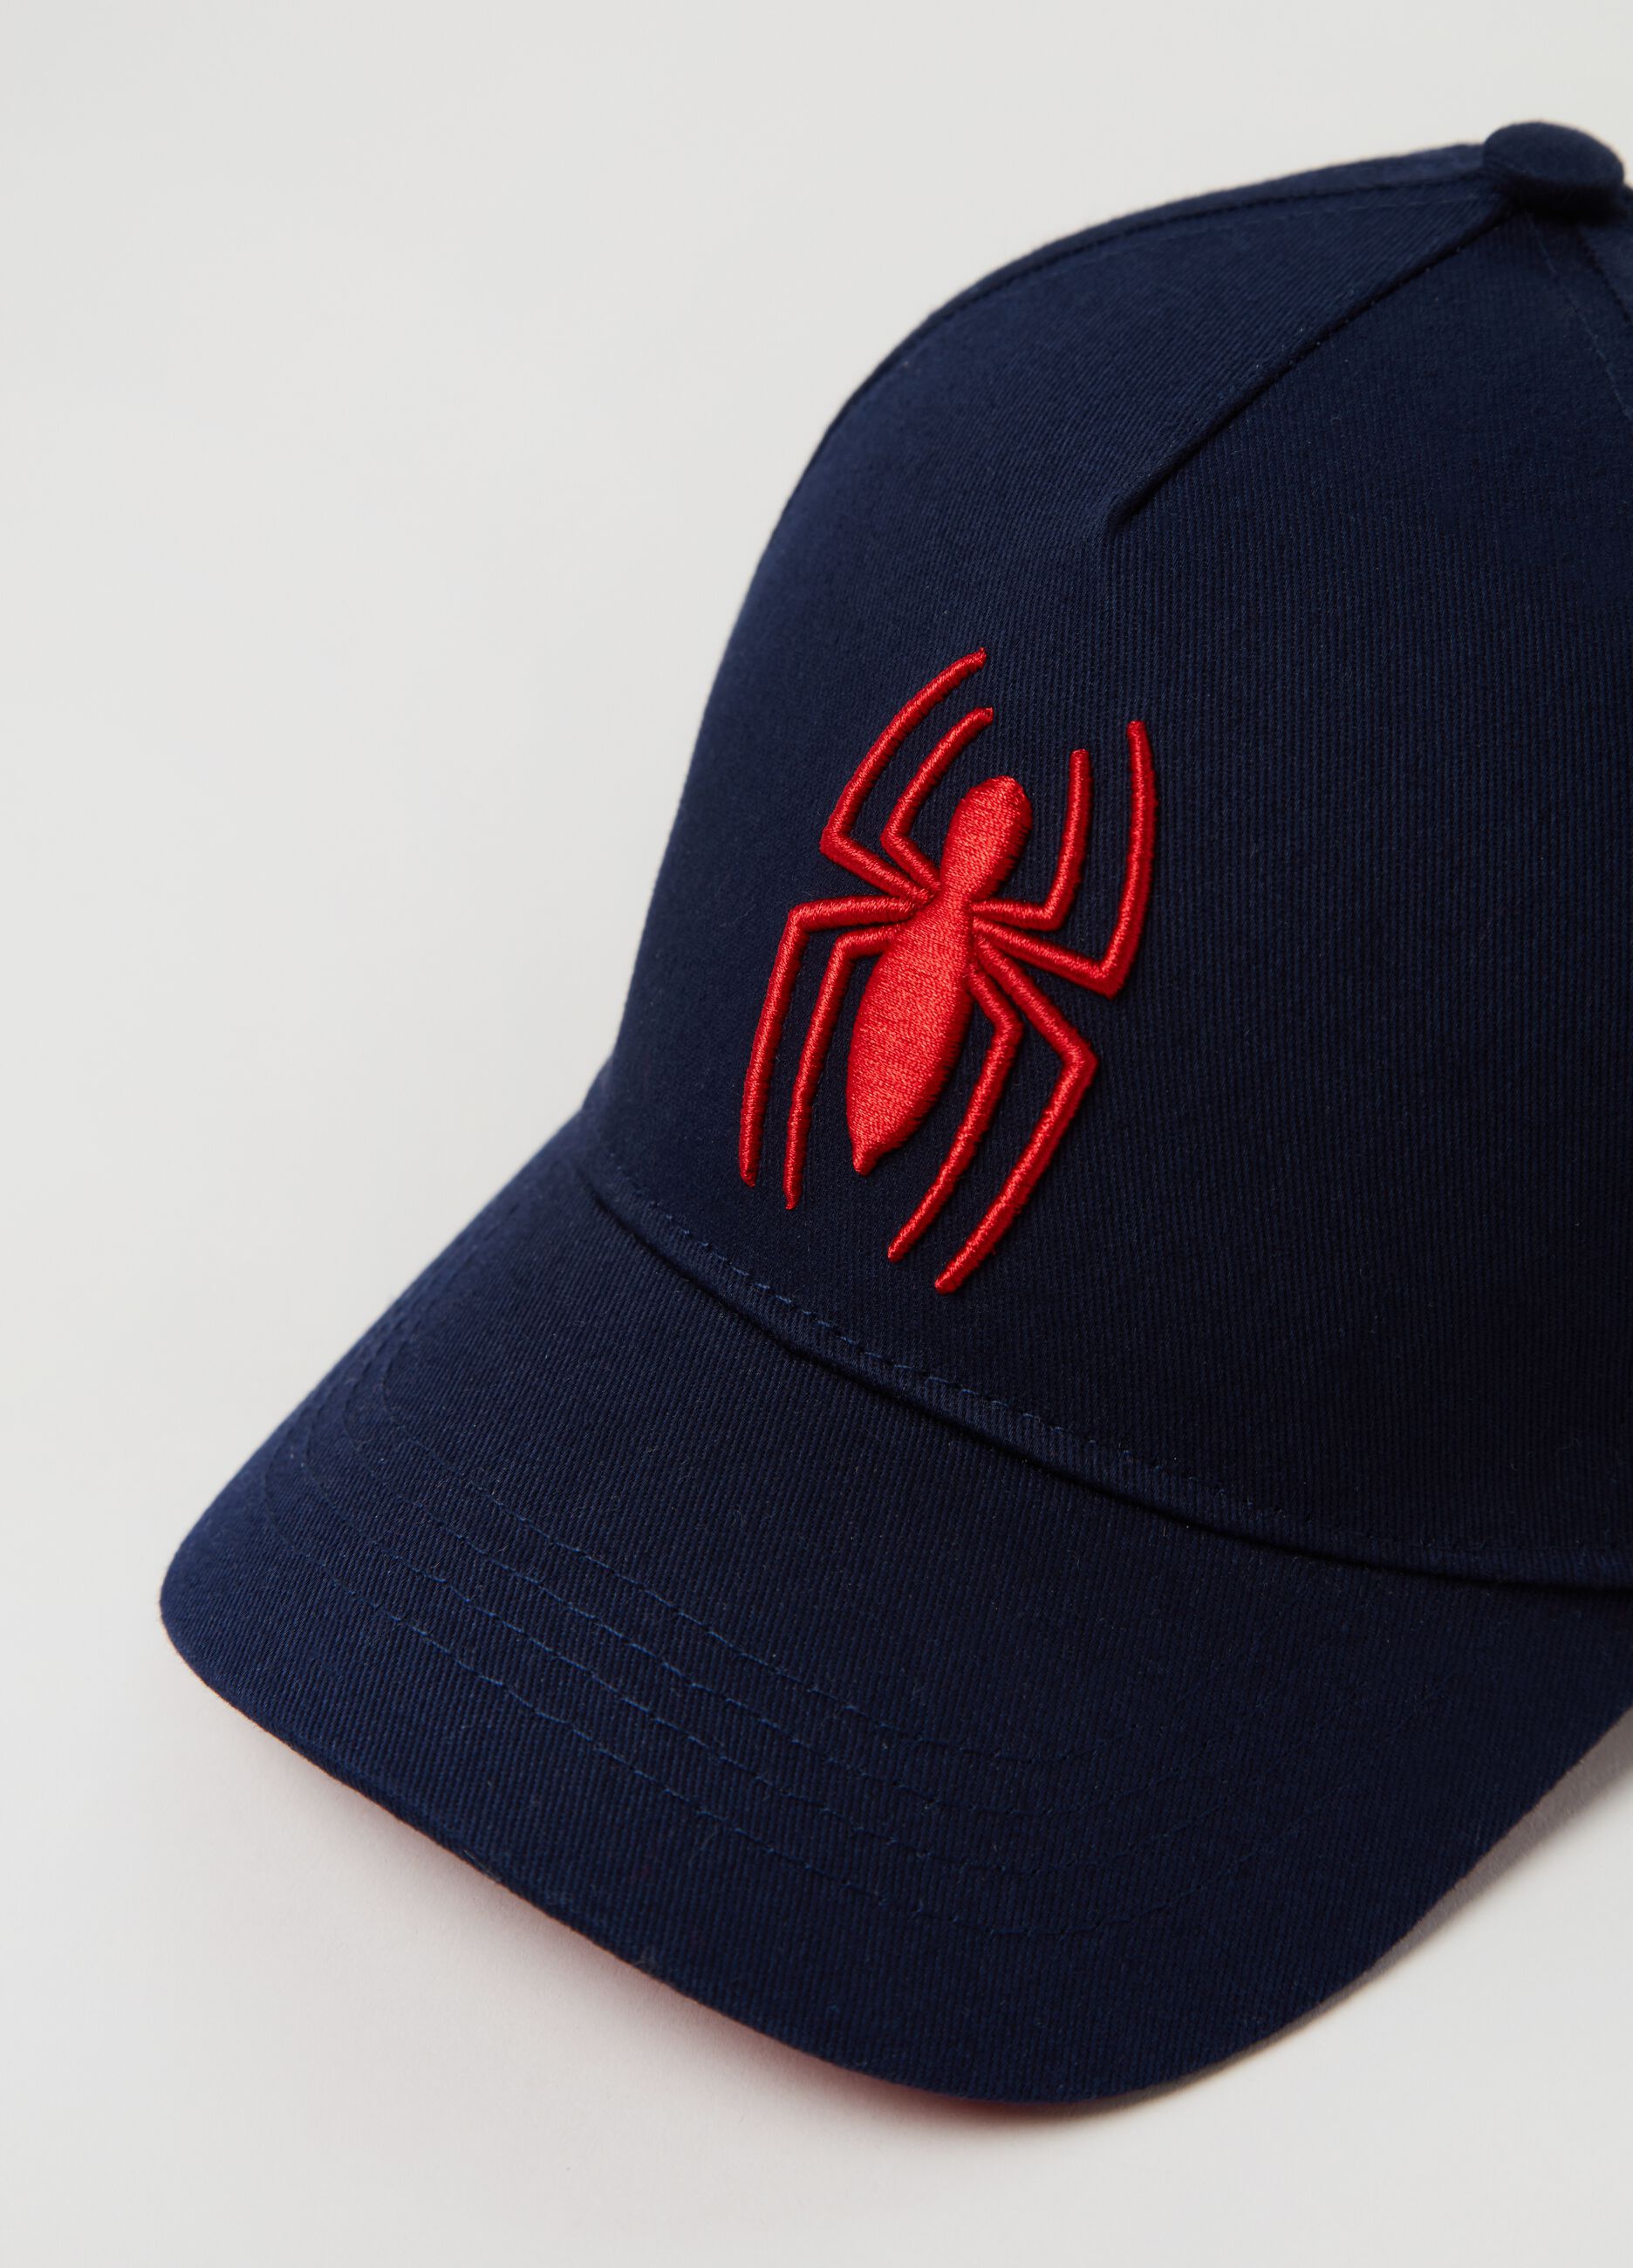 Gorra de béisbol con bordado Spider-Man